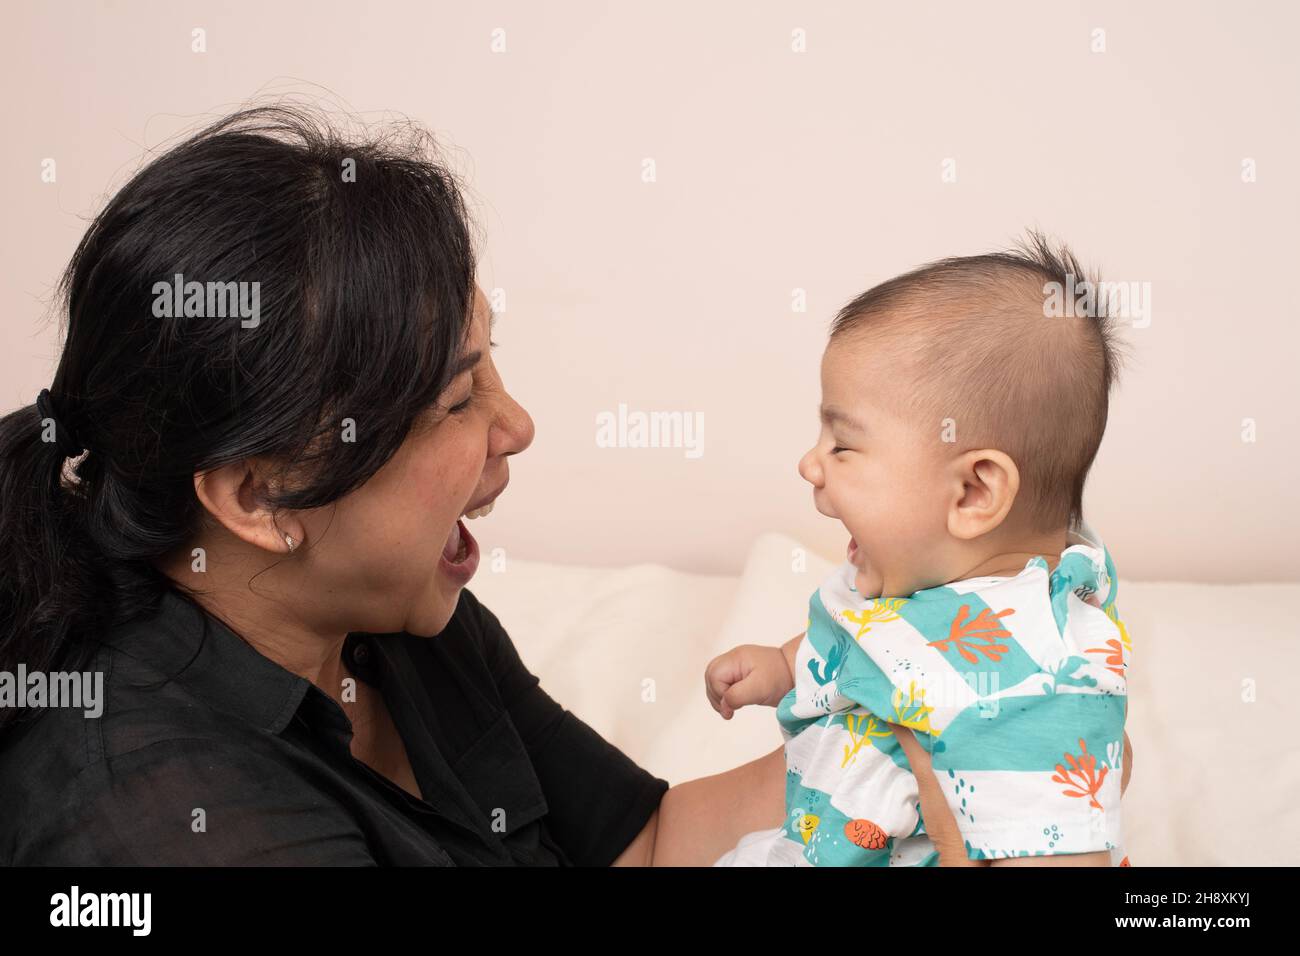 bébé garçon de 3 mois interaction avec la mère correspondant expressions, rire, bouche ouverte Banque D'Images